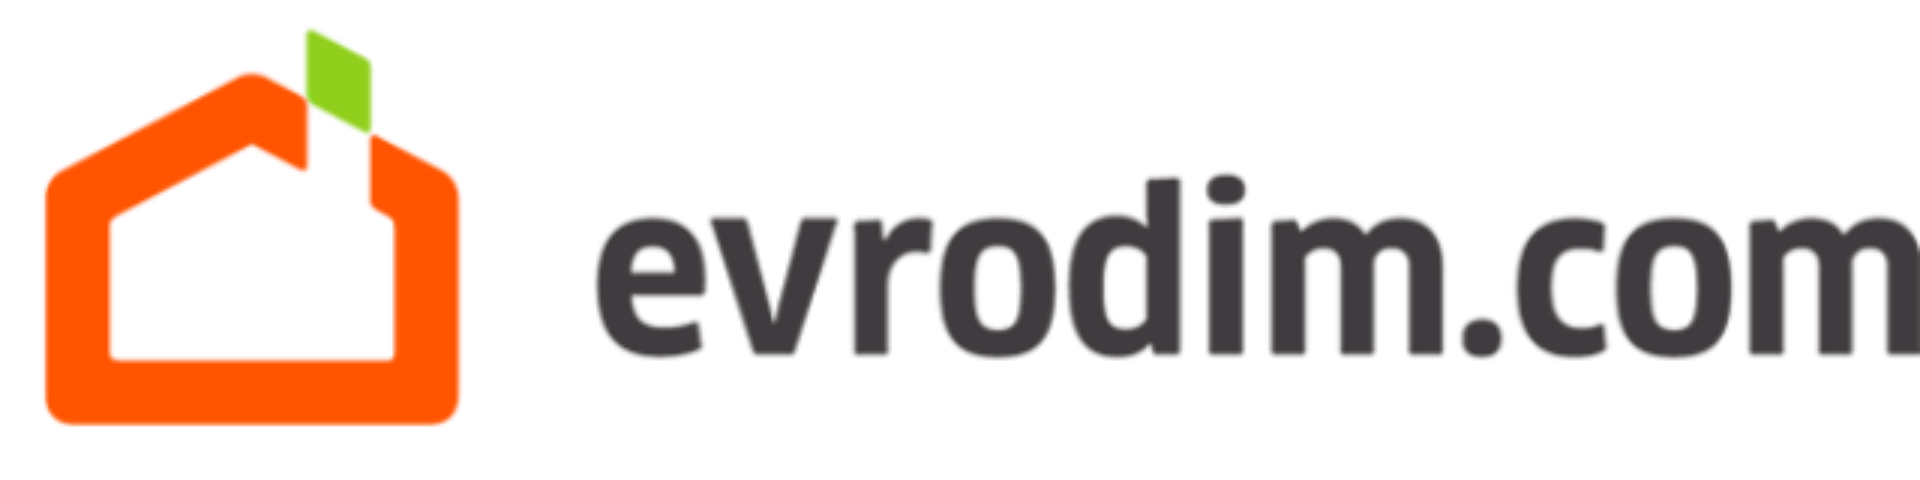 В 2015 году компания «Evrodim» признана лидером коттеджного строительства Украины